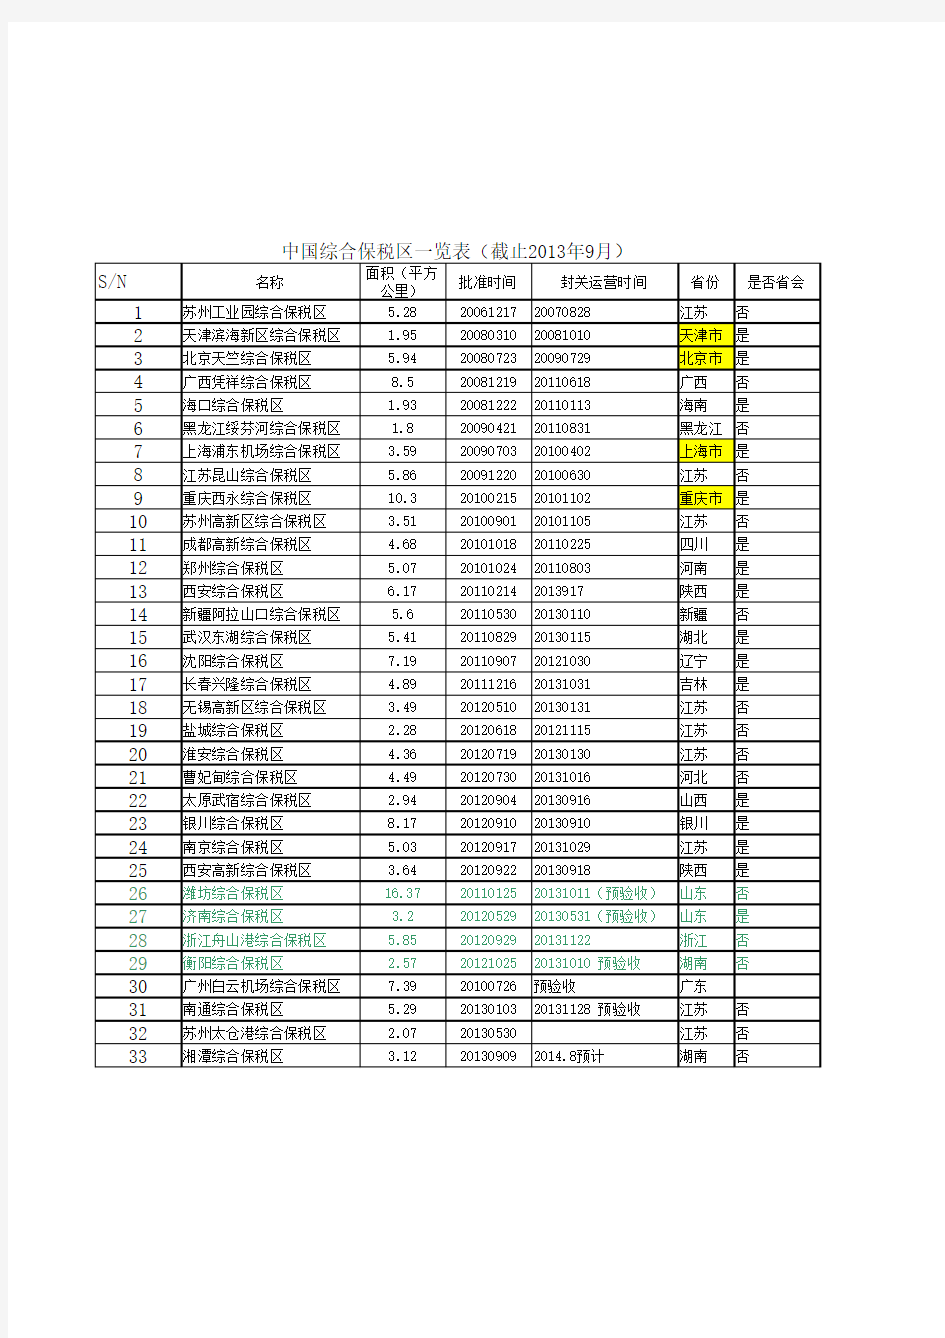 中国综合保税区一览表(截止2013年9月)